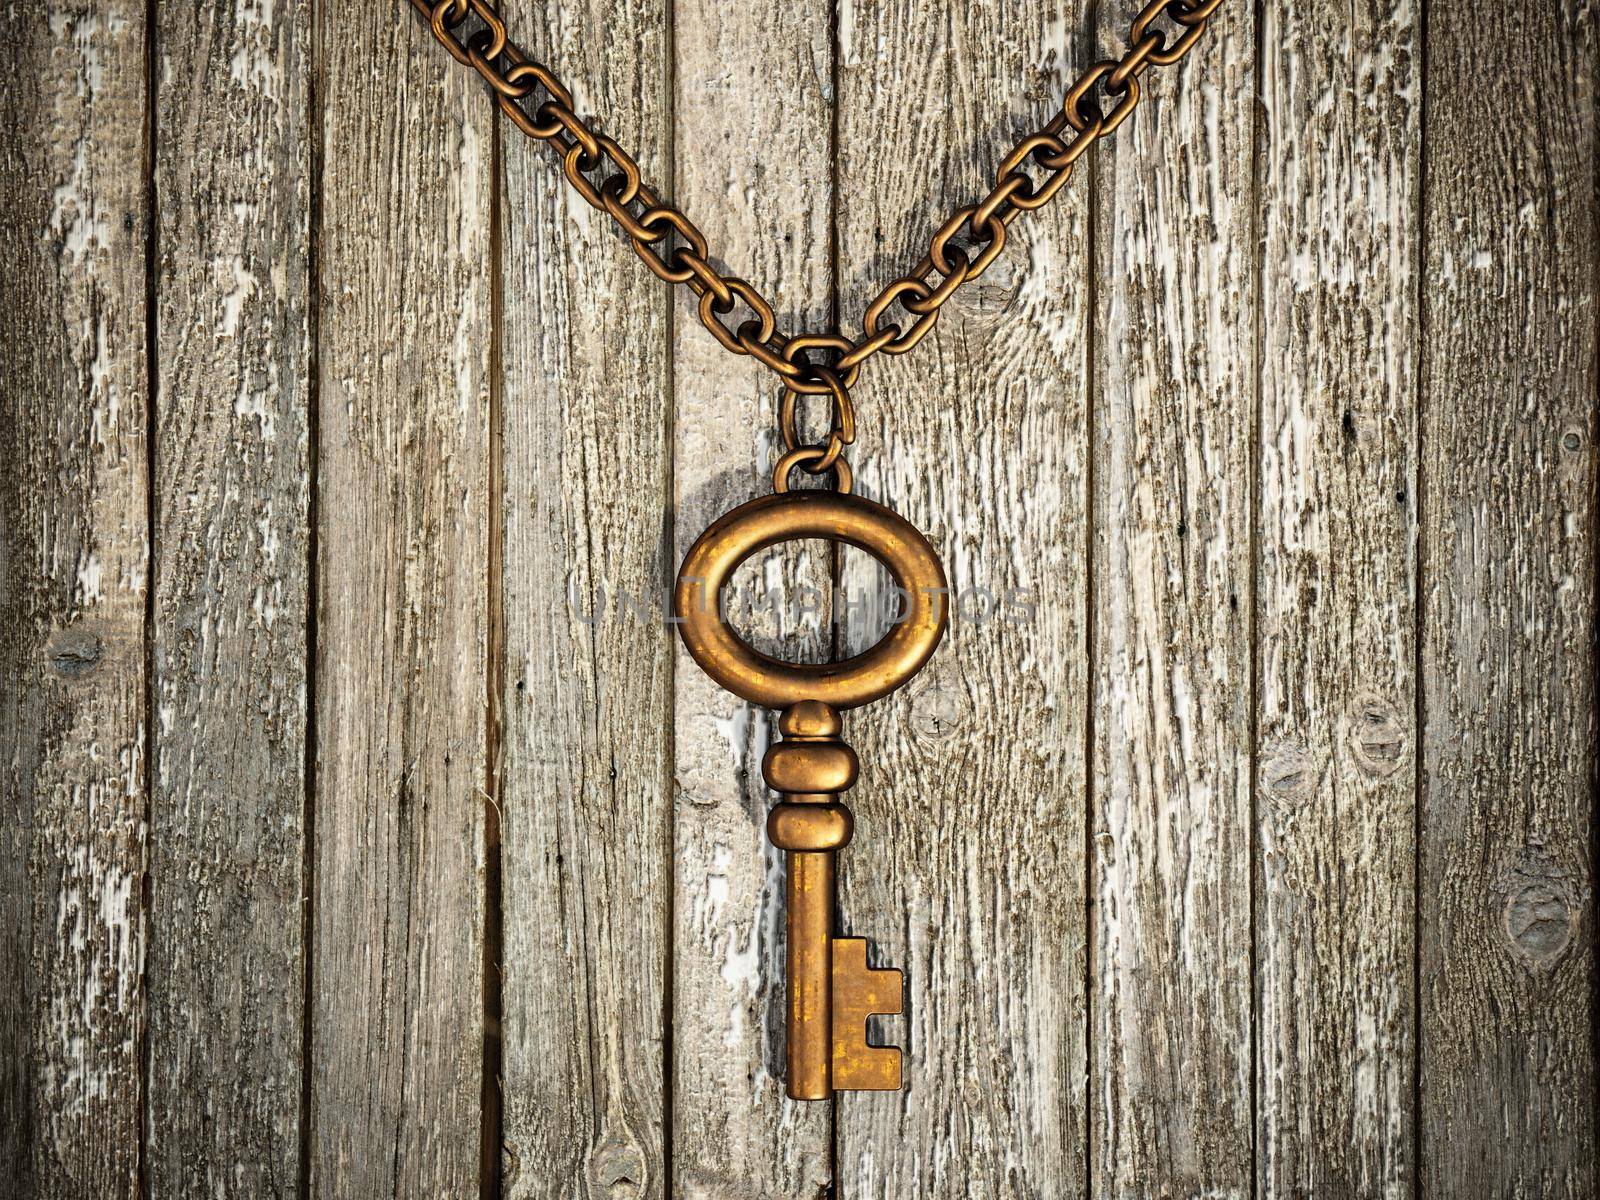 Vintage brass key standing on old wood. 3D illustration.